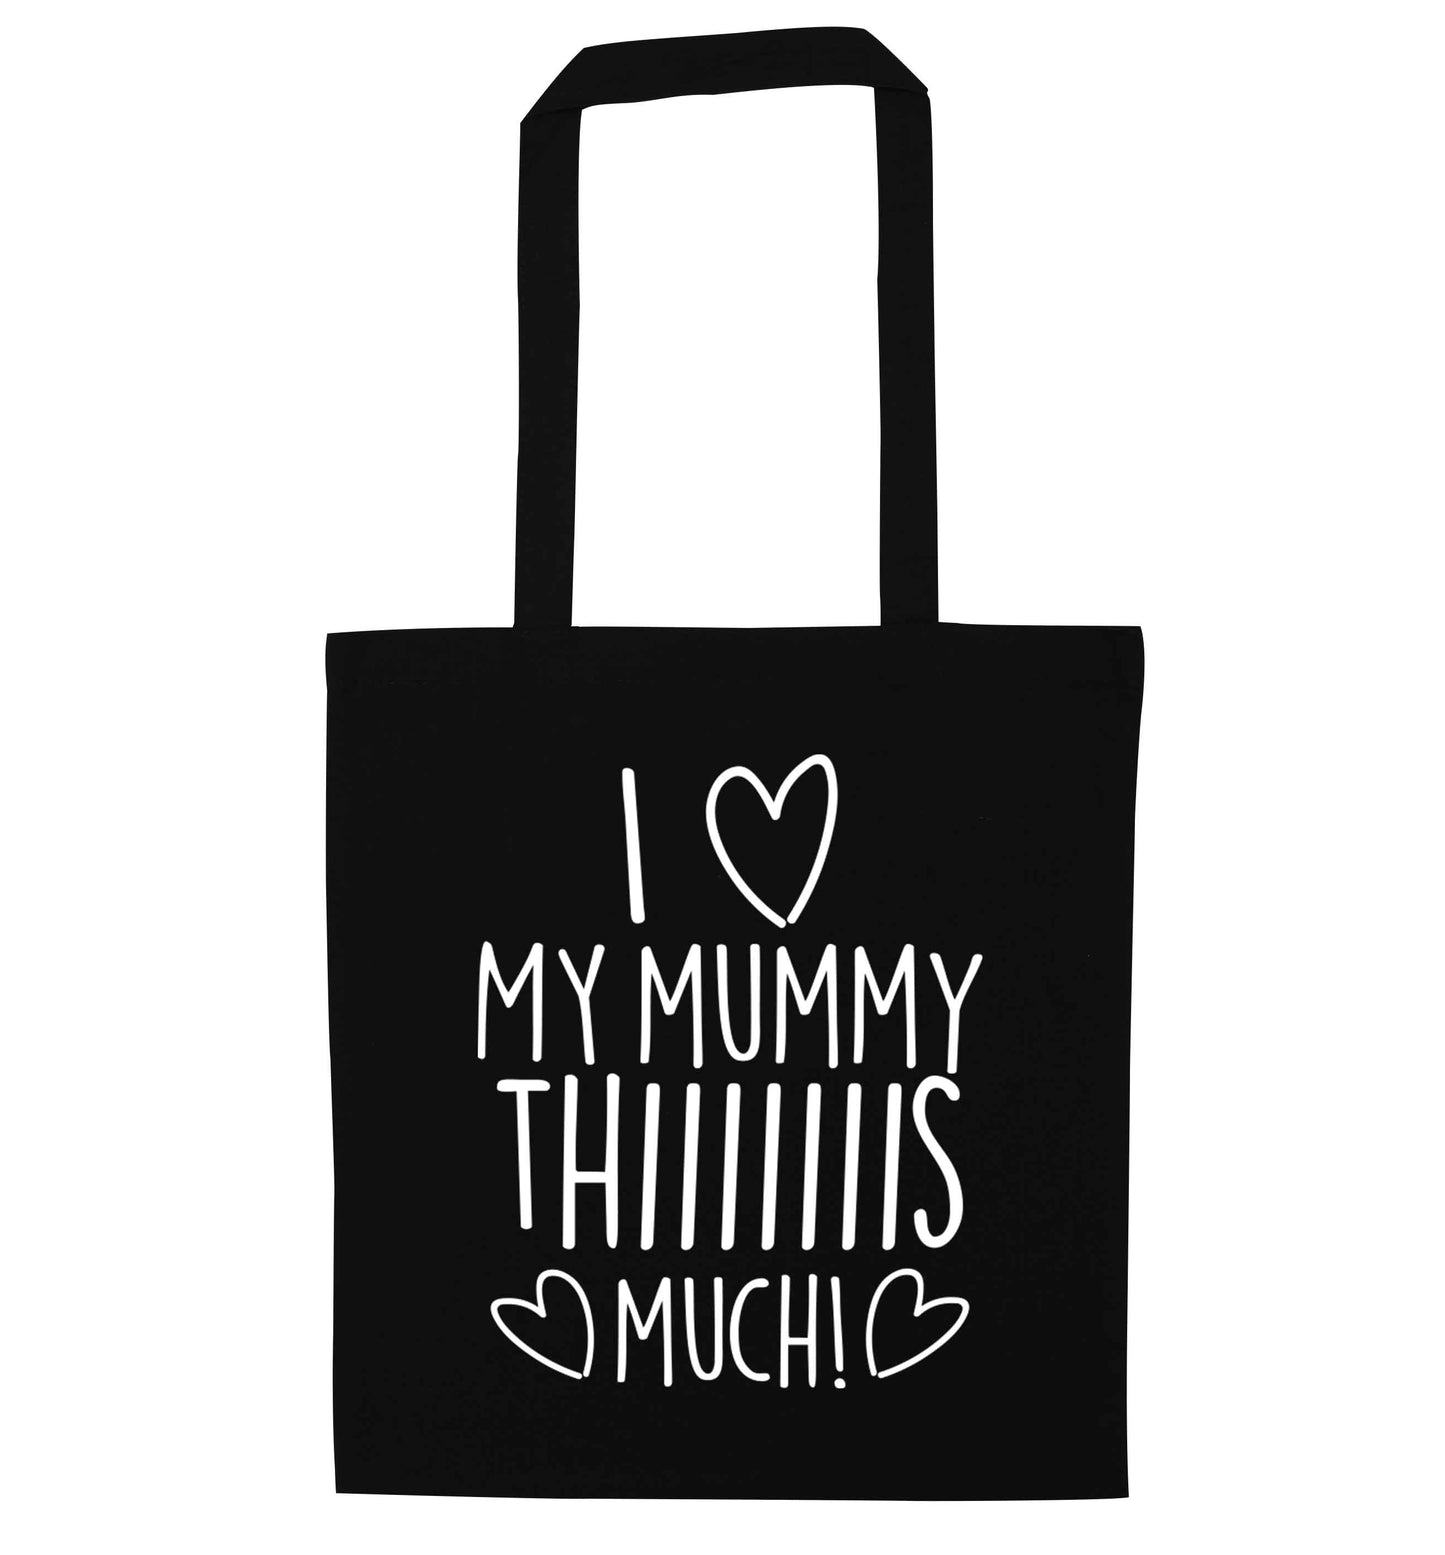 I love my mummy thiiiiis much! black tote bag